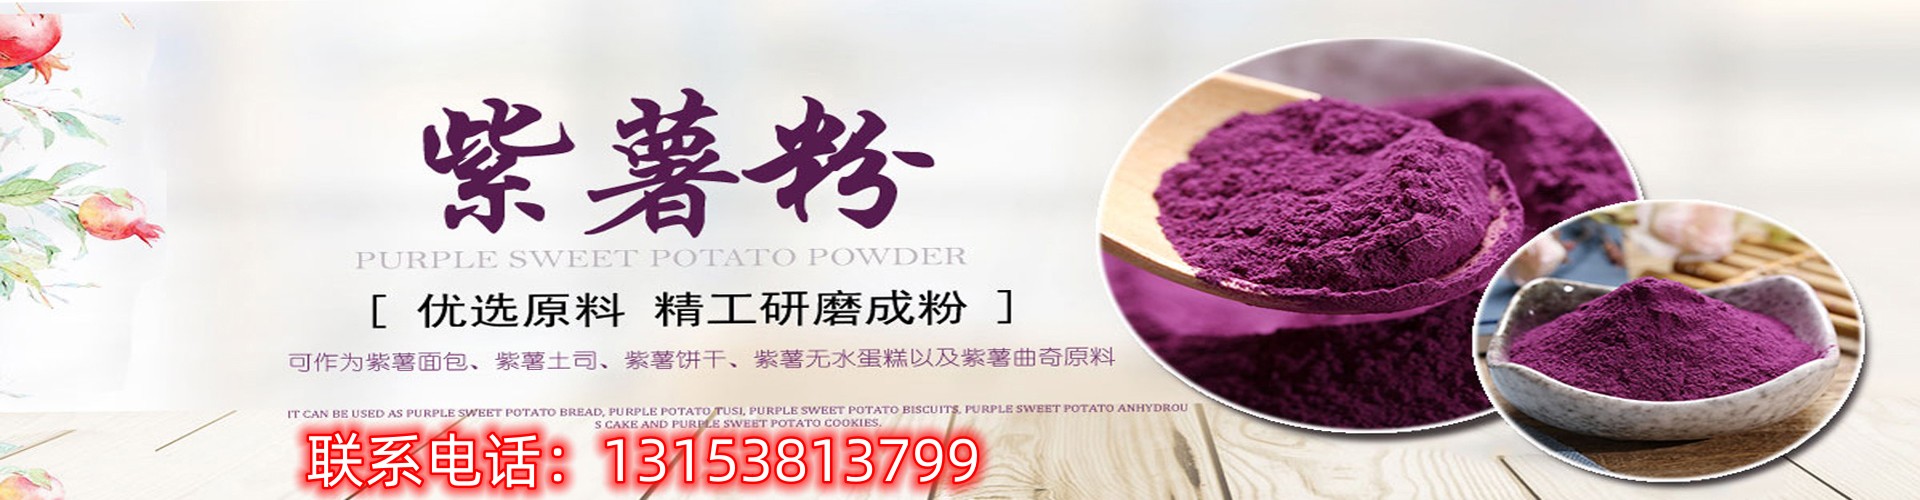 紫薯粉、广州本地紫薯粉、广州、广州紫薯粉